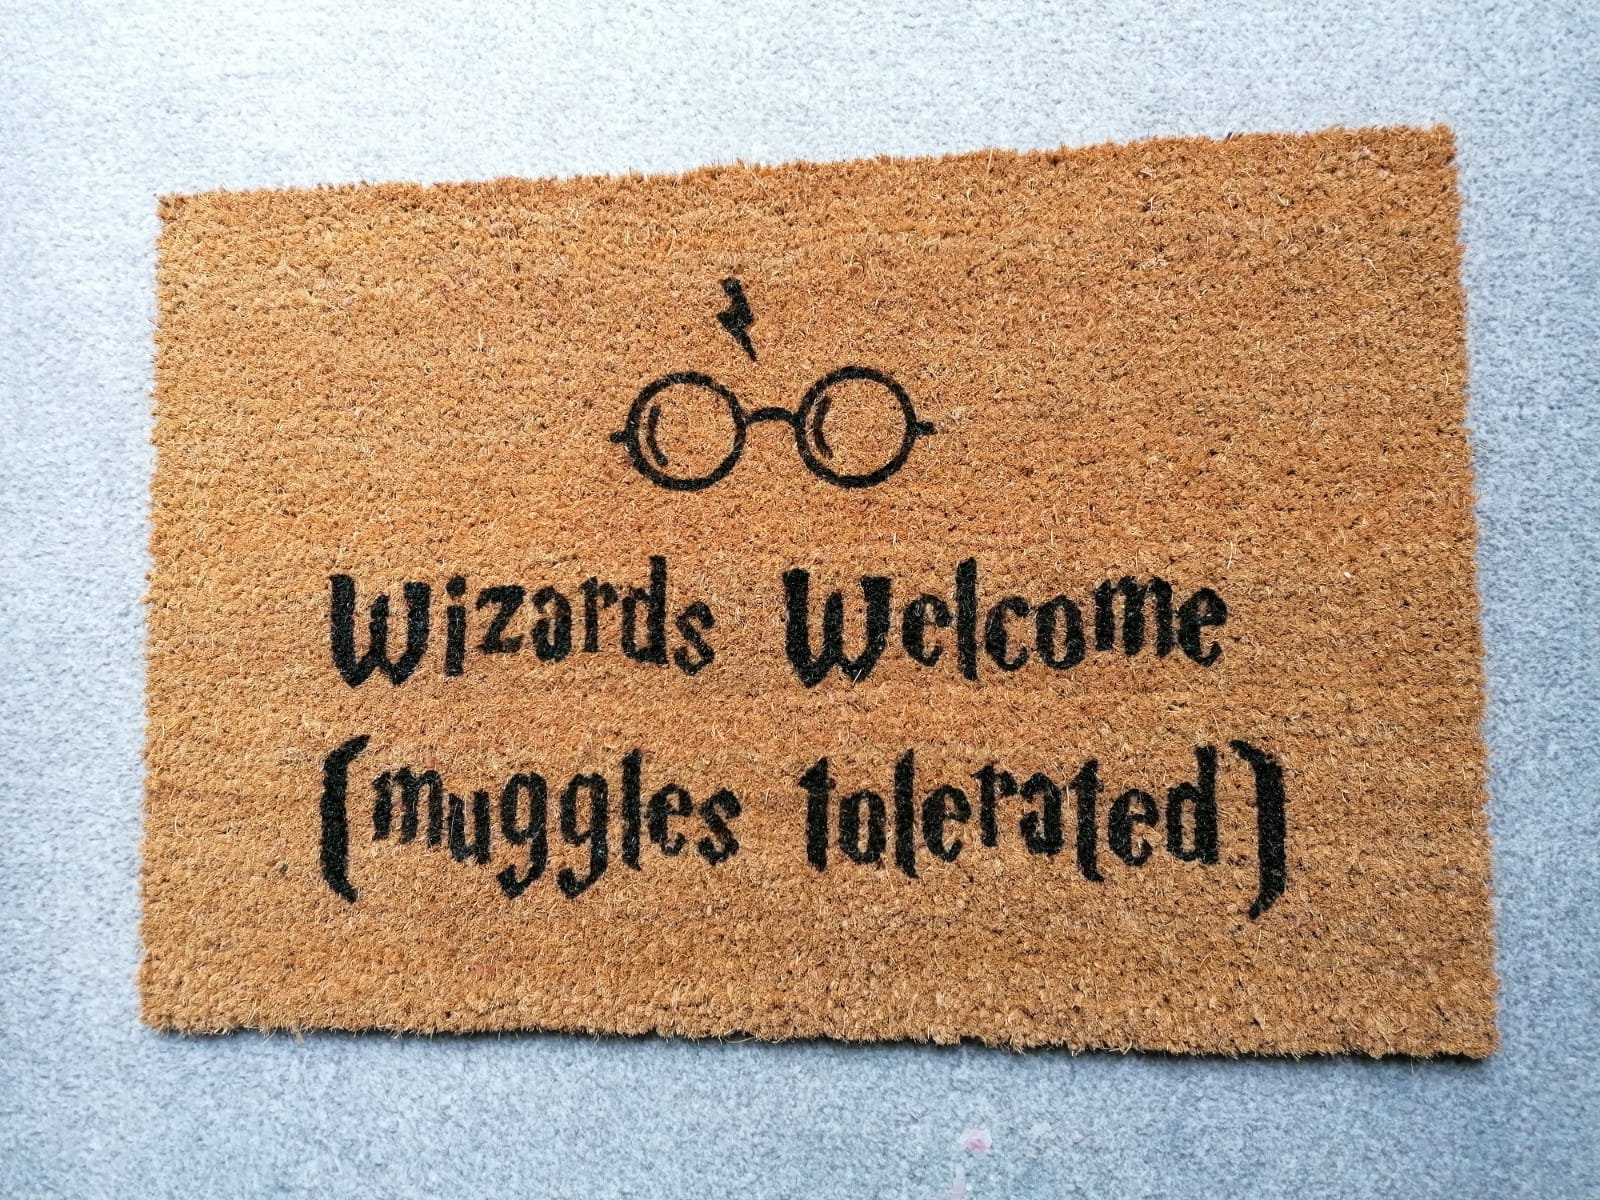 Felpudo de Harry Potter / Magos bienvenidos muggles tolerados